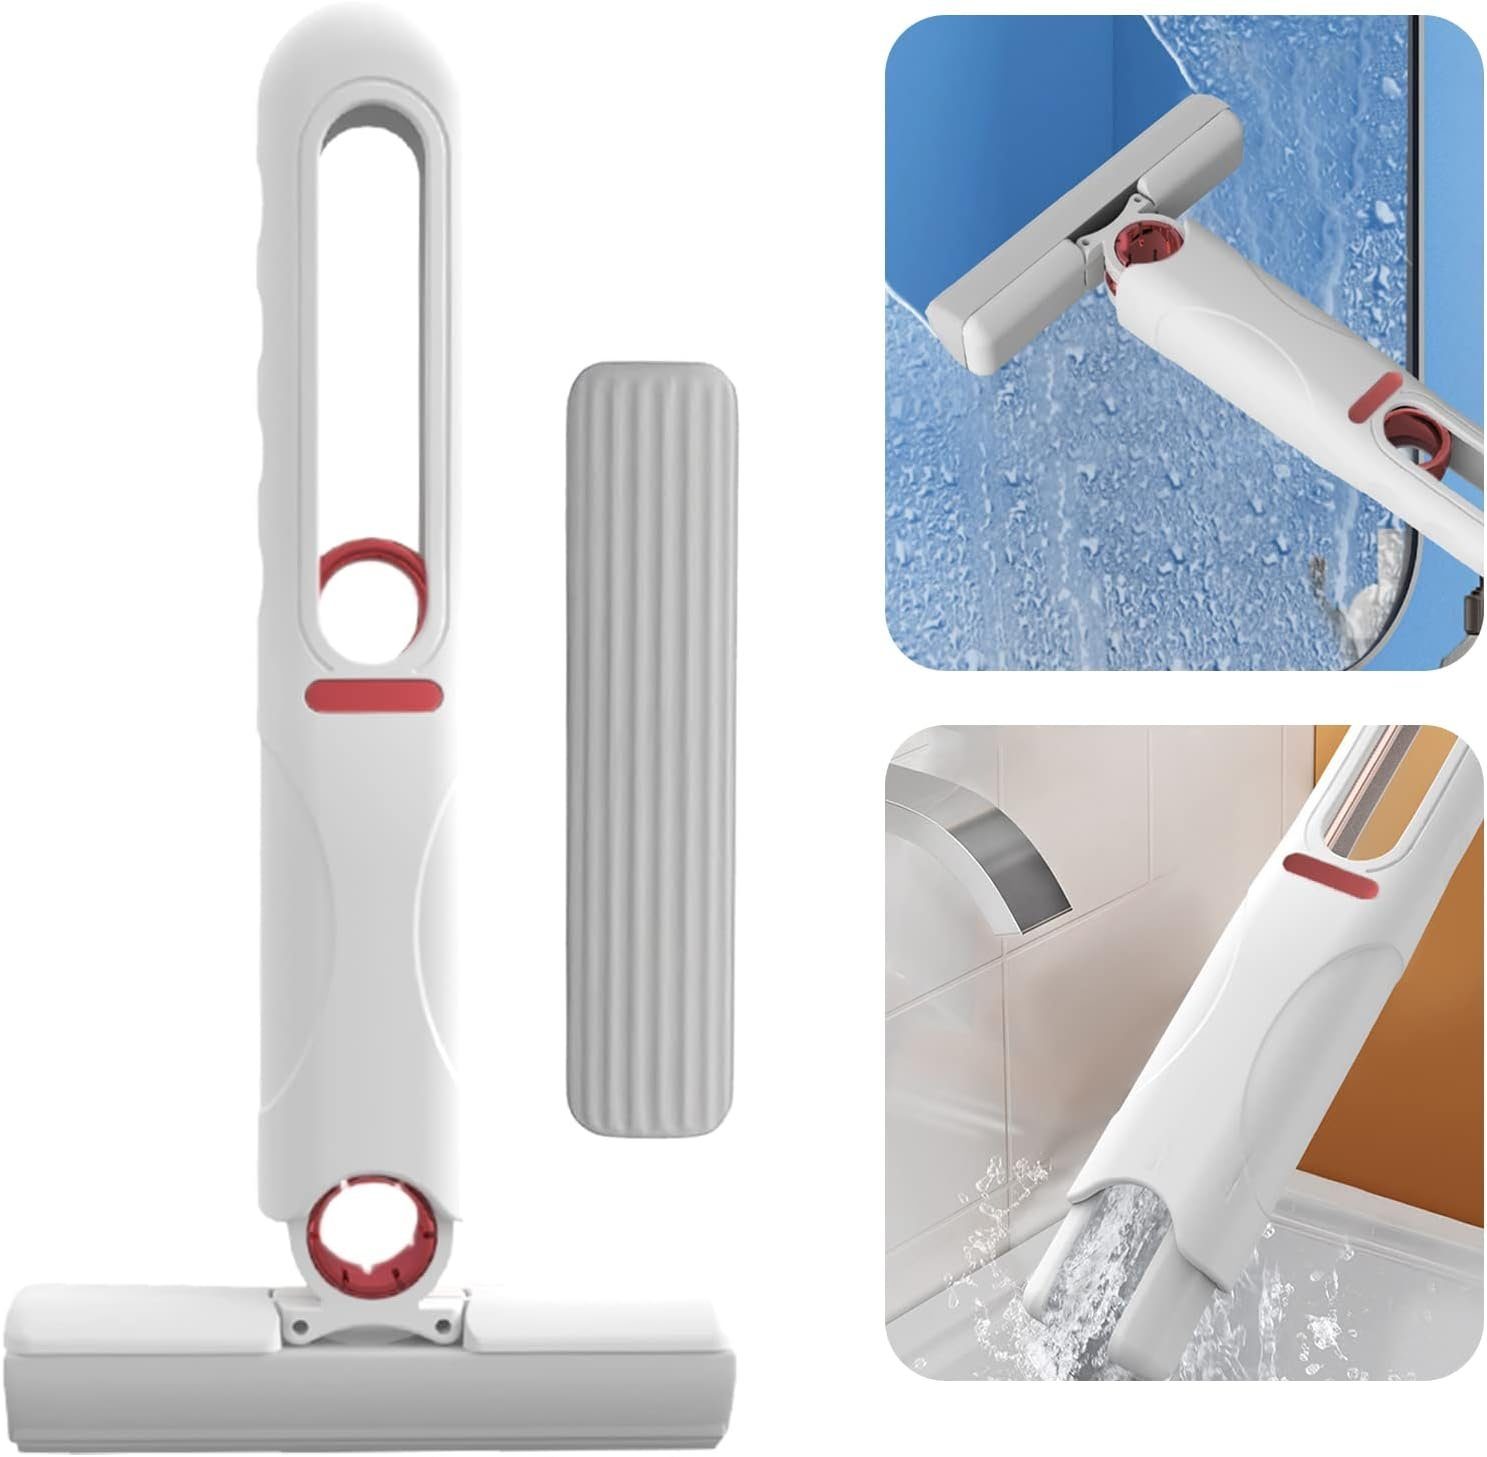 Haiaveng Wischmopp Wischmopp Mini-Mopp,Tragbar Selbstpressung Wasser Wischer Mop, Desktop Wasser Mop,mit 1 Moppkopf | Wischmopps